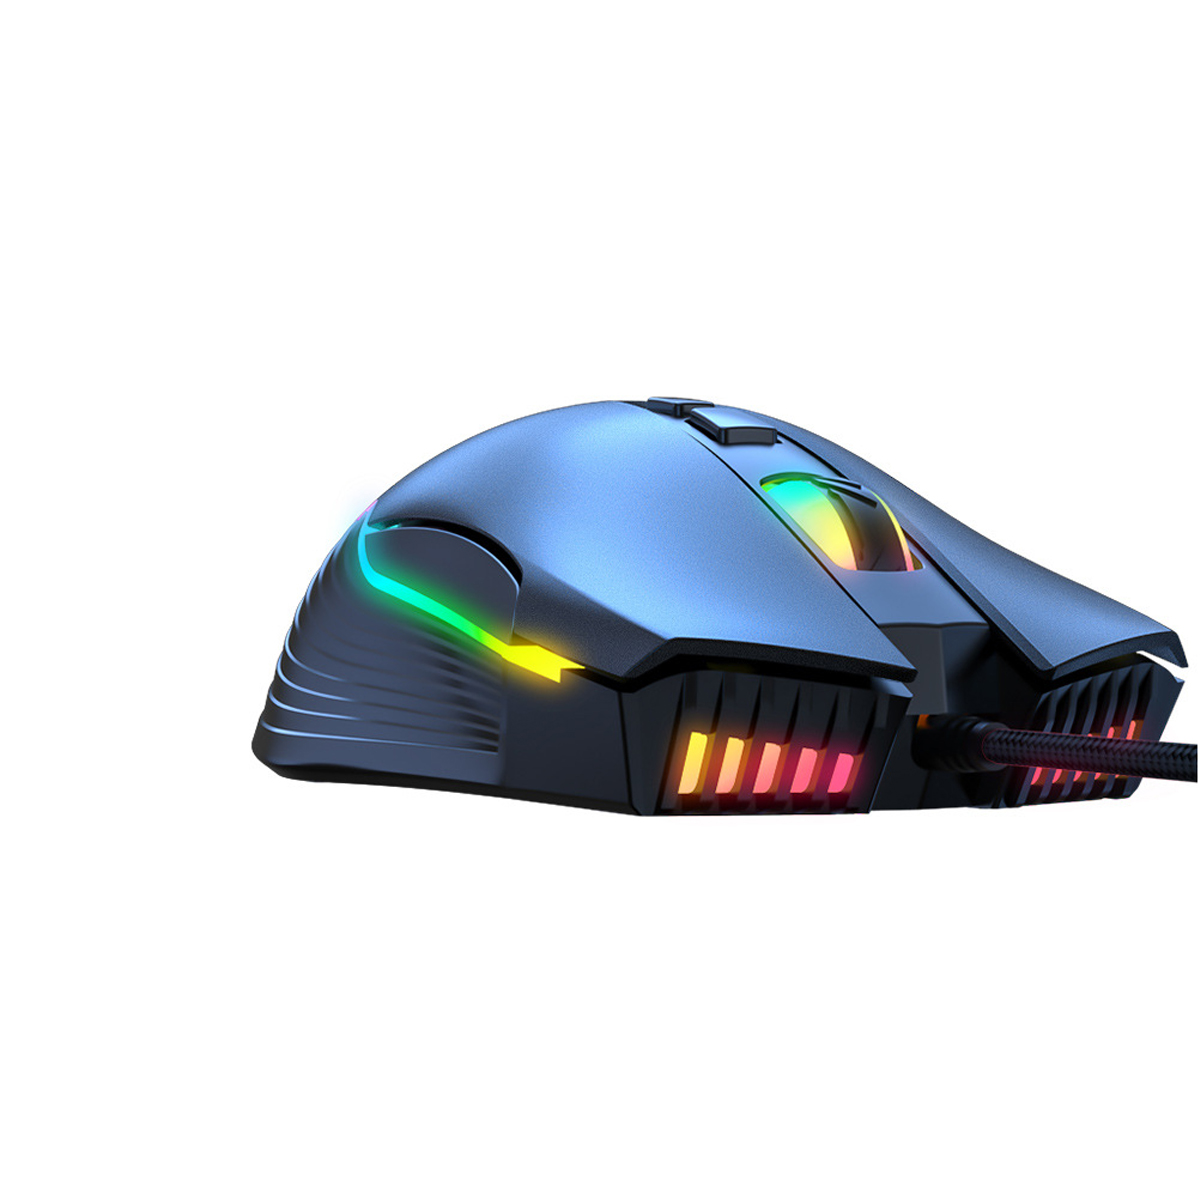 SYNTEK Maus verdrahtet Computer black Maus, schwarz Büro Licht Gaming emittierende RGB-Maus Gaming mechanische